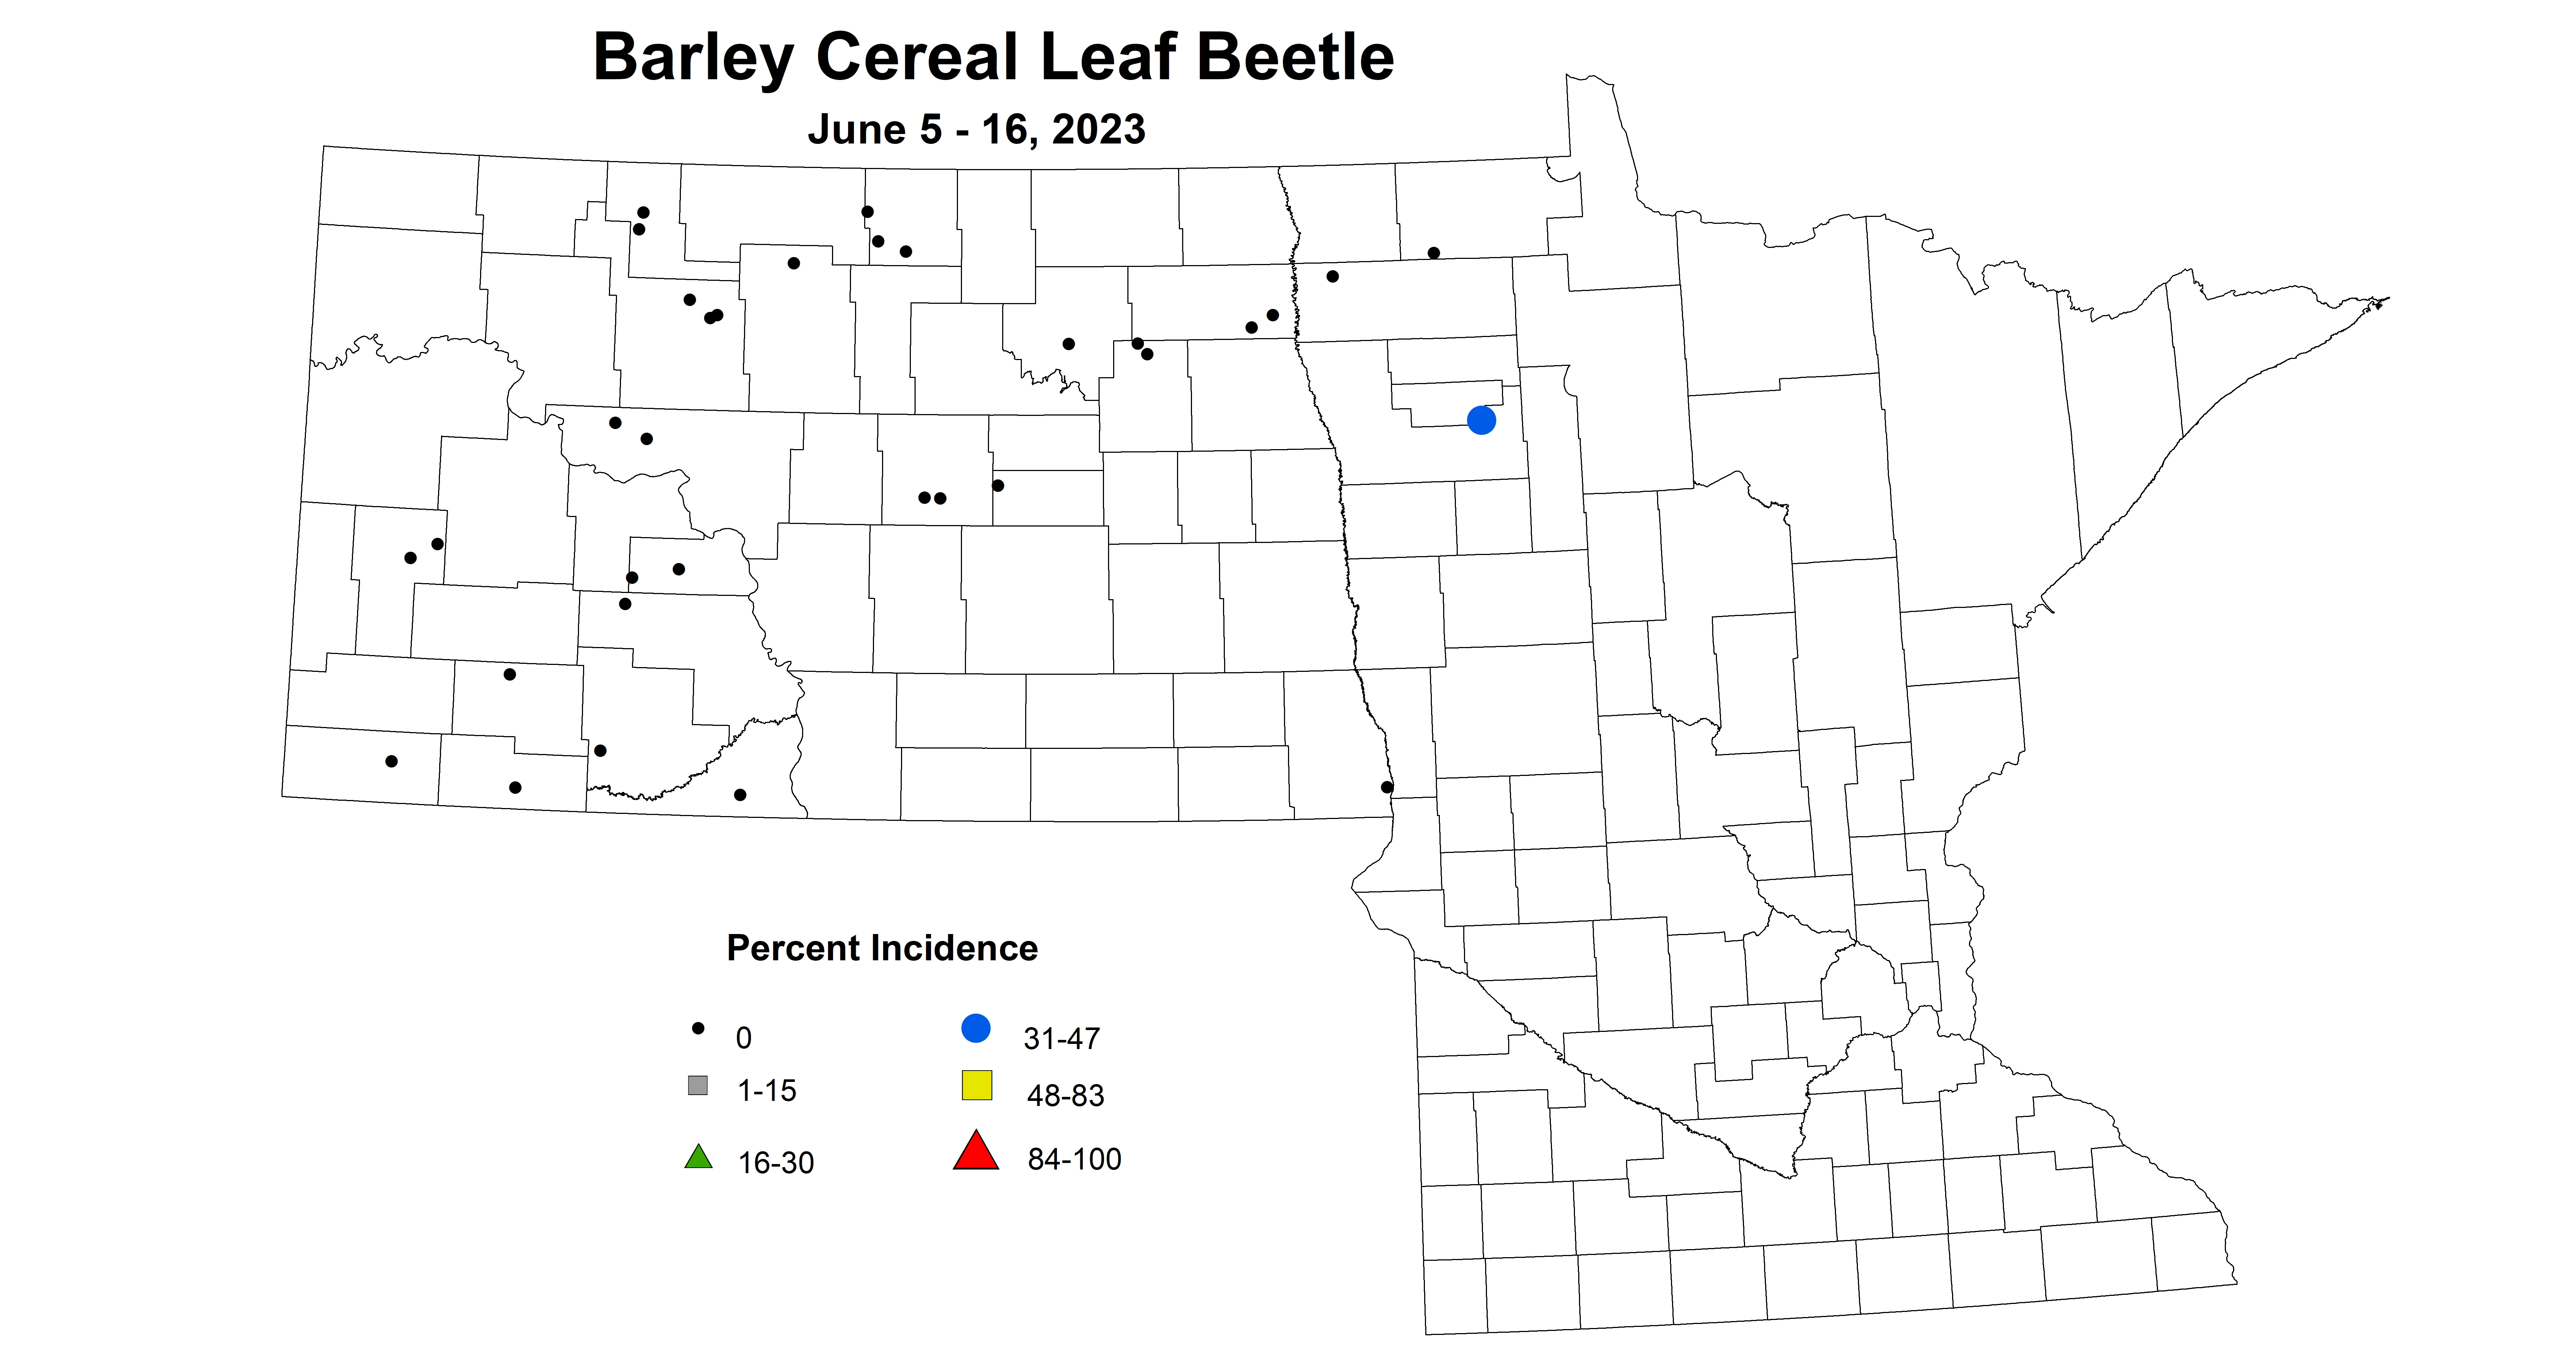 barley cereal leaf beetle June 5-16 2023